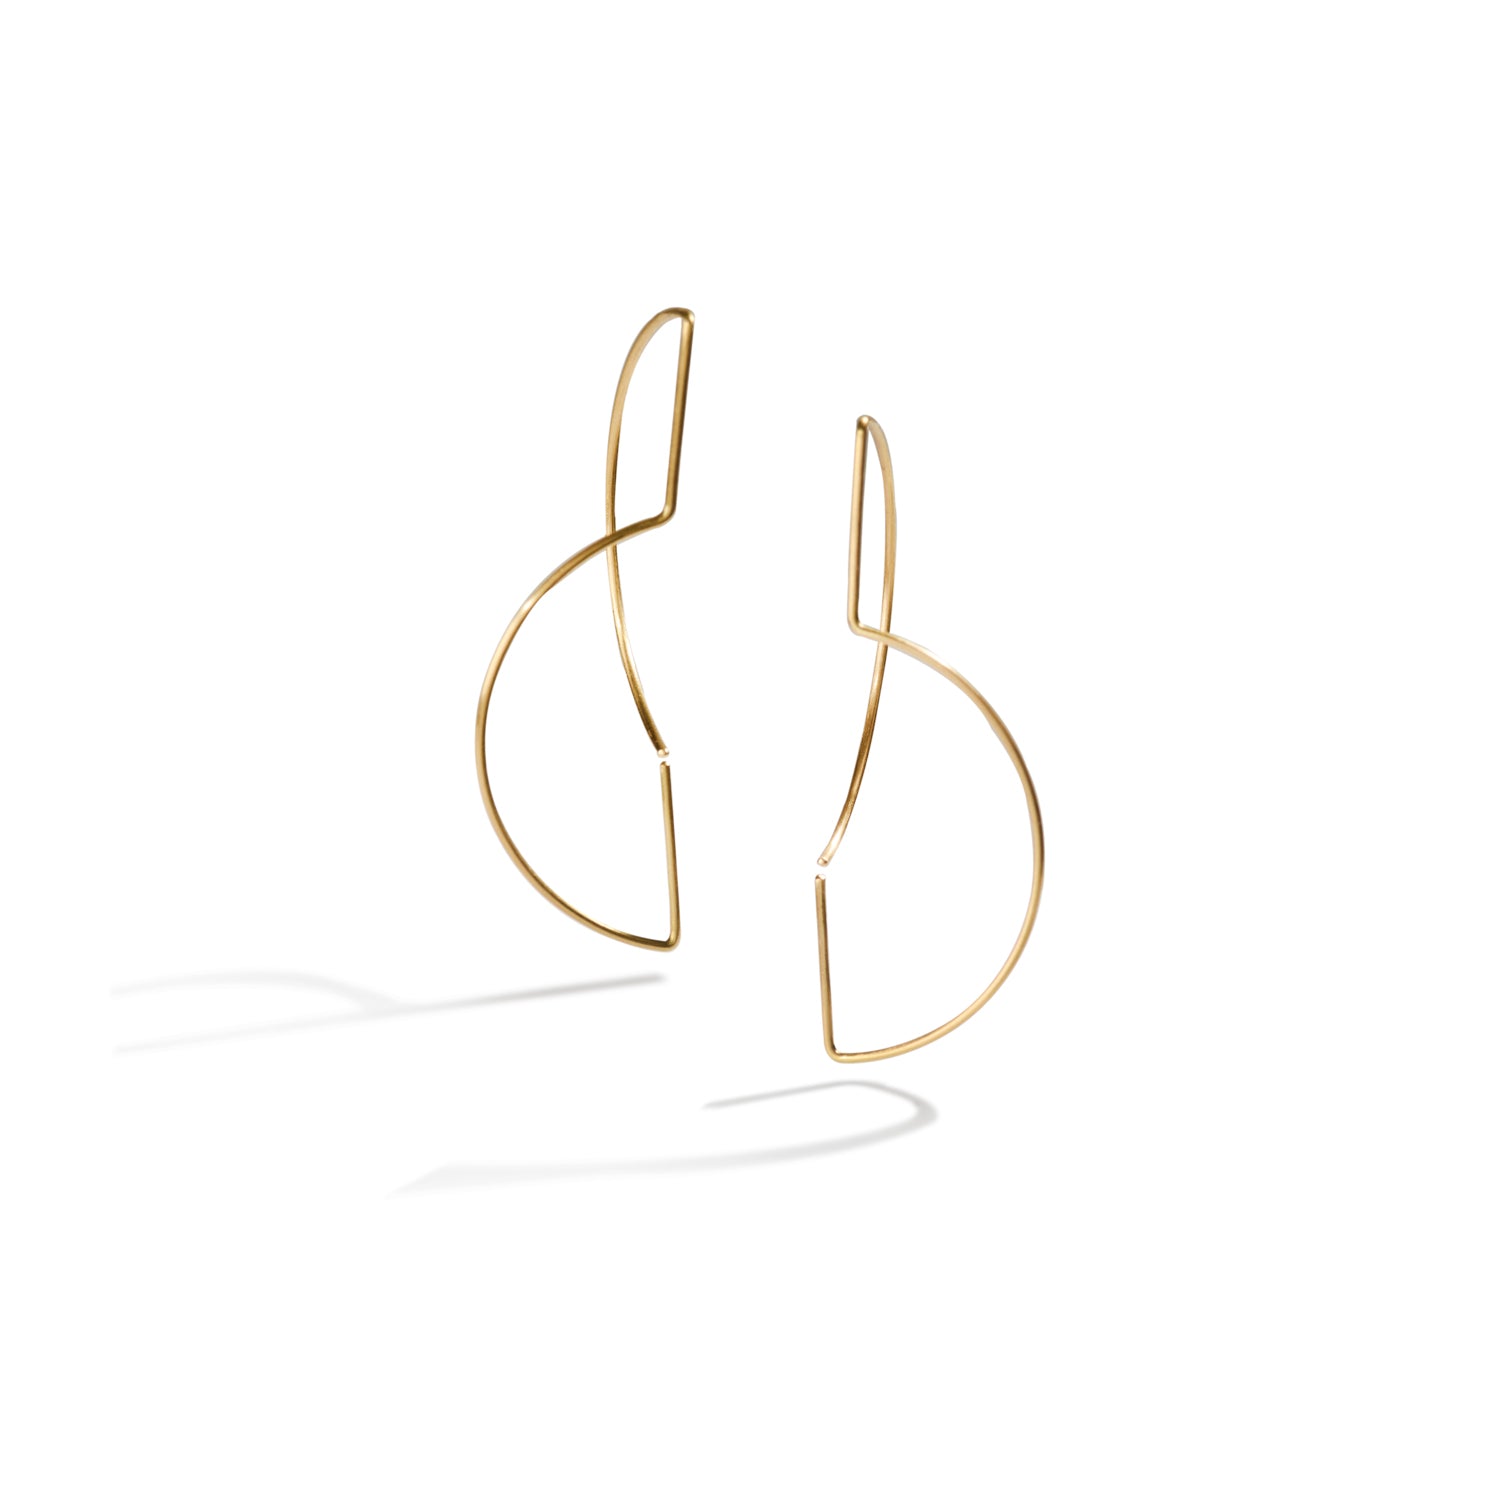 Geometric Gold Wire Earrings